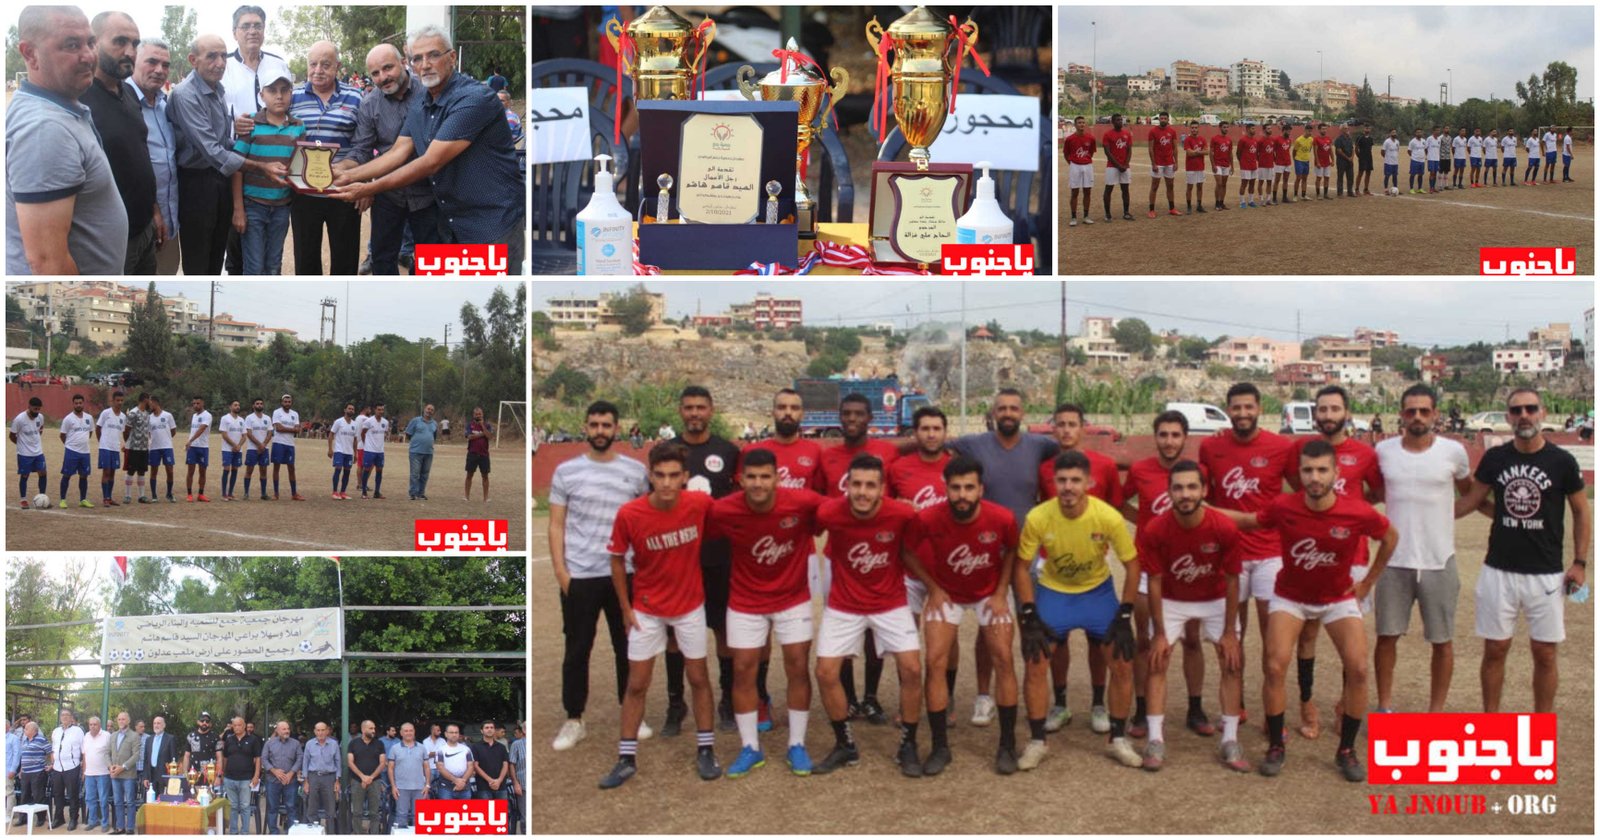 إفتتاح مهرجان جمعية جمع للتنمية والبناء الرياضي لكرة القدم